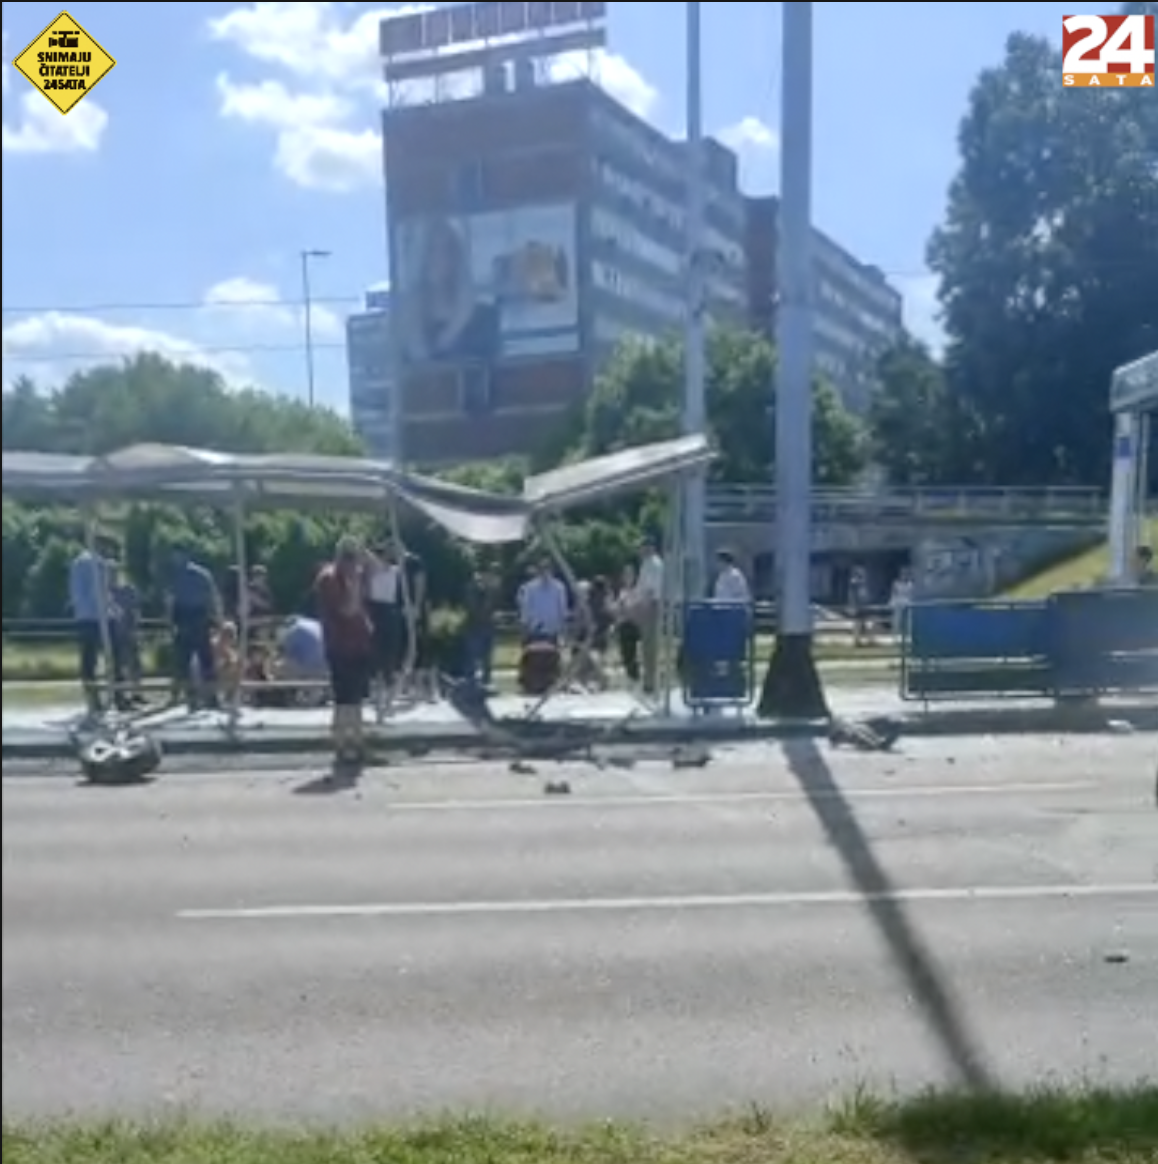 Vozač koji je uništio tramvajsku stanicu u Zagrebu i ozlijedio troje djece imao 2,2  promila!